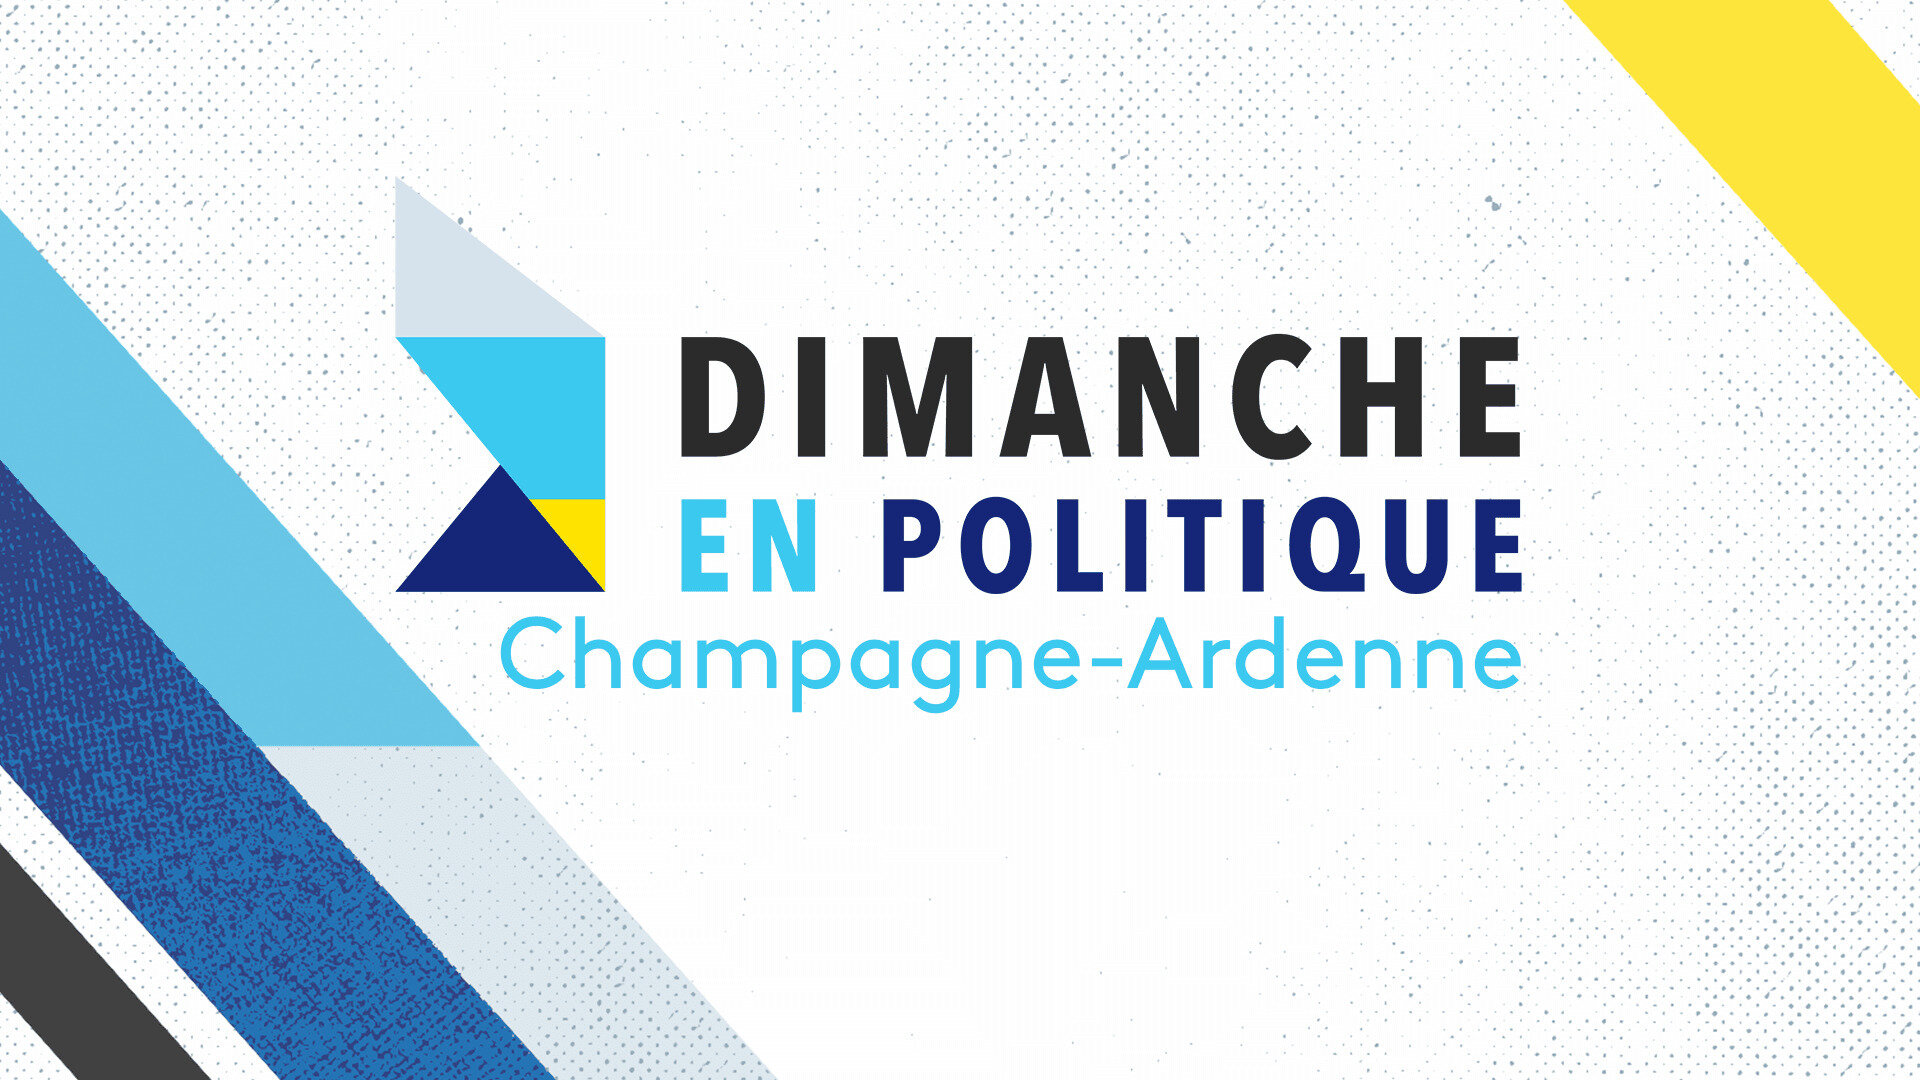 Dimanche en politique - Champagne-Ardenne : La politique peut-elle encore faire rêver ?